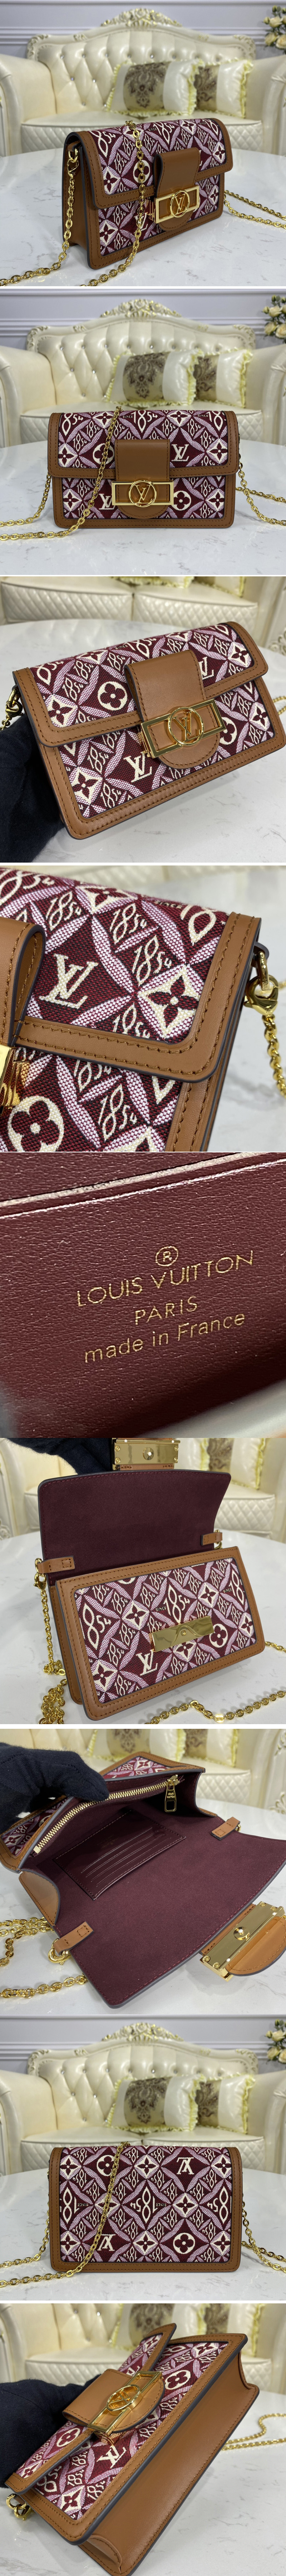 Louis Vuitton M69992 Monogram Textile Since 1854 Dauphine Chain